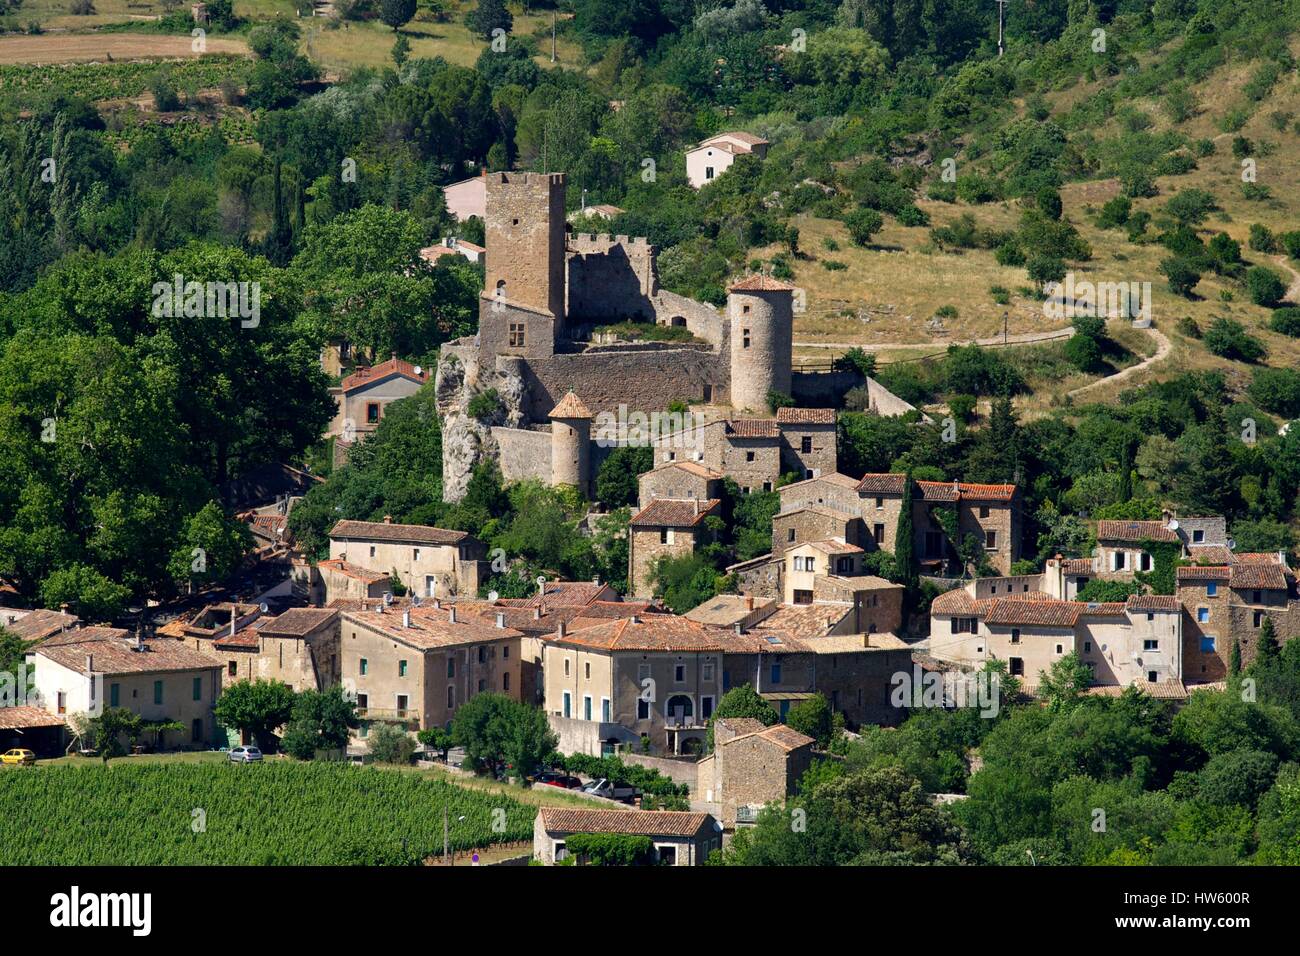 France, Herault, Saint Jean de Bueges village and castle Stock Photo - Alamy